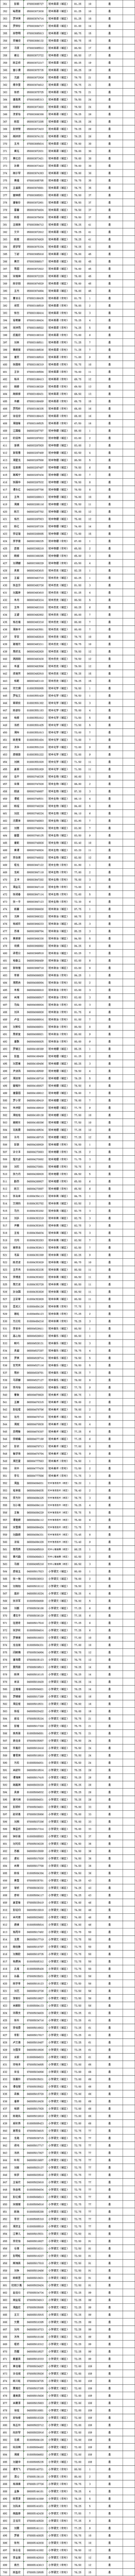 2022年长沙县公开招聘（选调）教师入围试教（面试、专业技能测试）人员名单公示(图4)